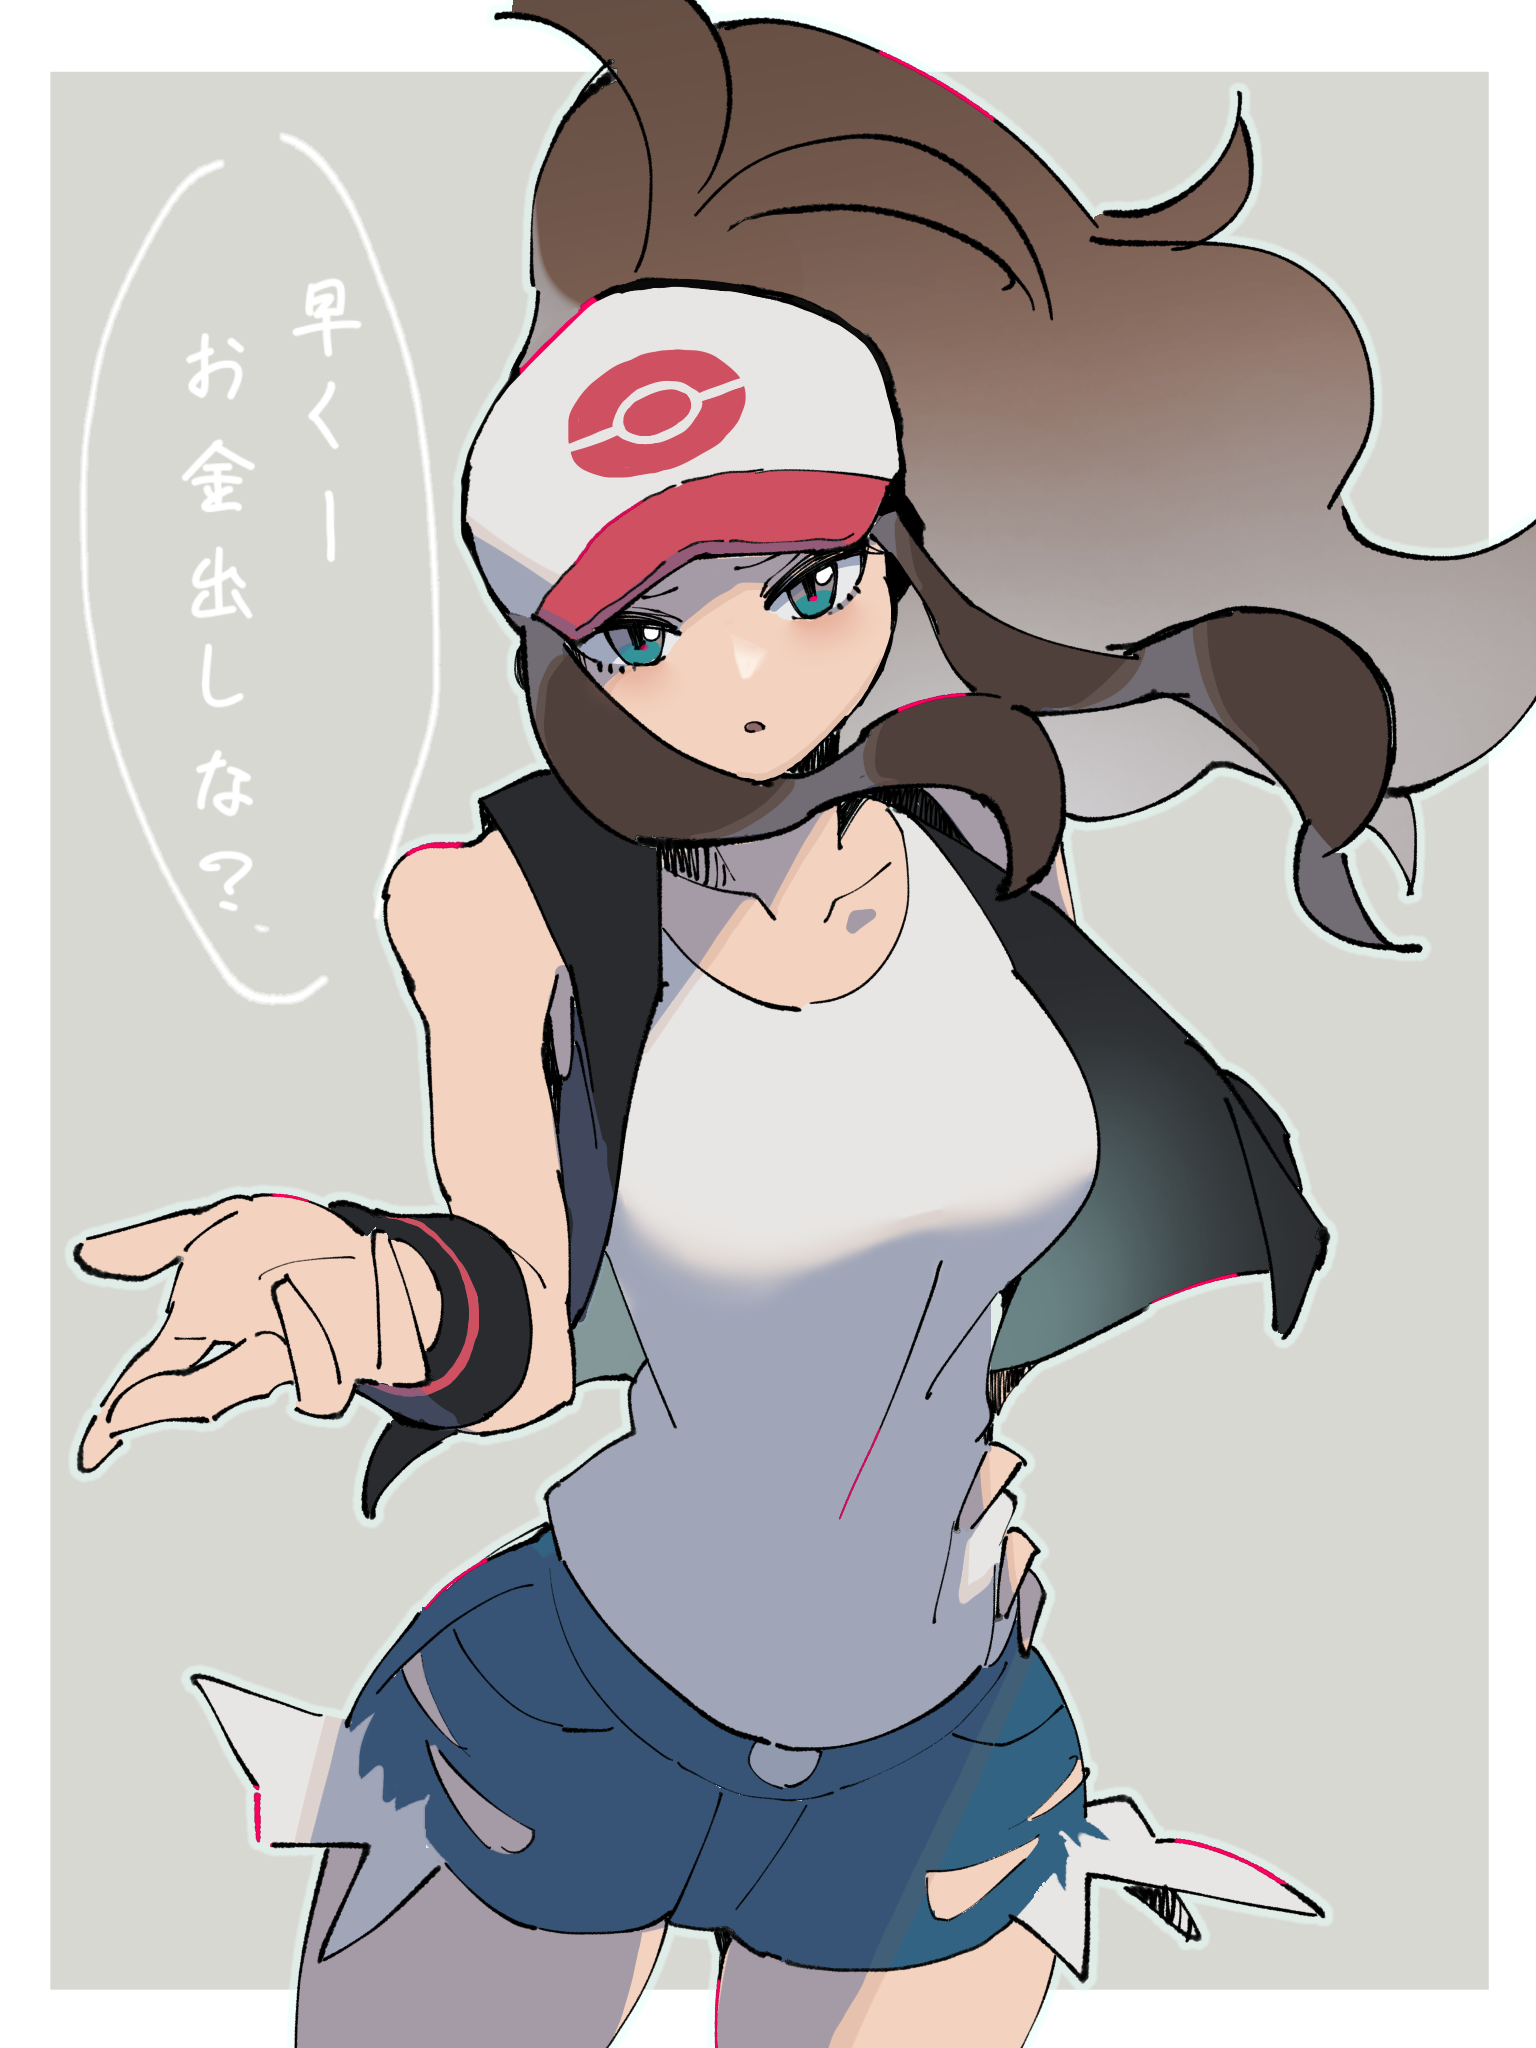 Anime Anime Girls Pokemon Hilda Pokemon Long Hair Ponytail Brunette Solo Artwork Digital Art Fan Art 1536x2048